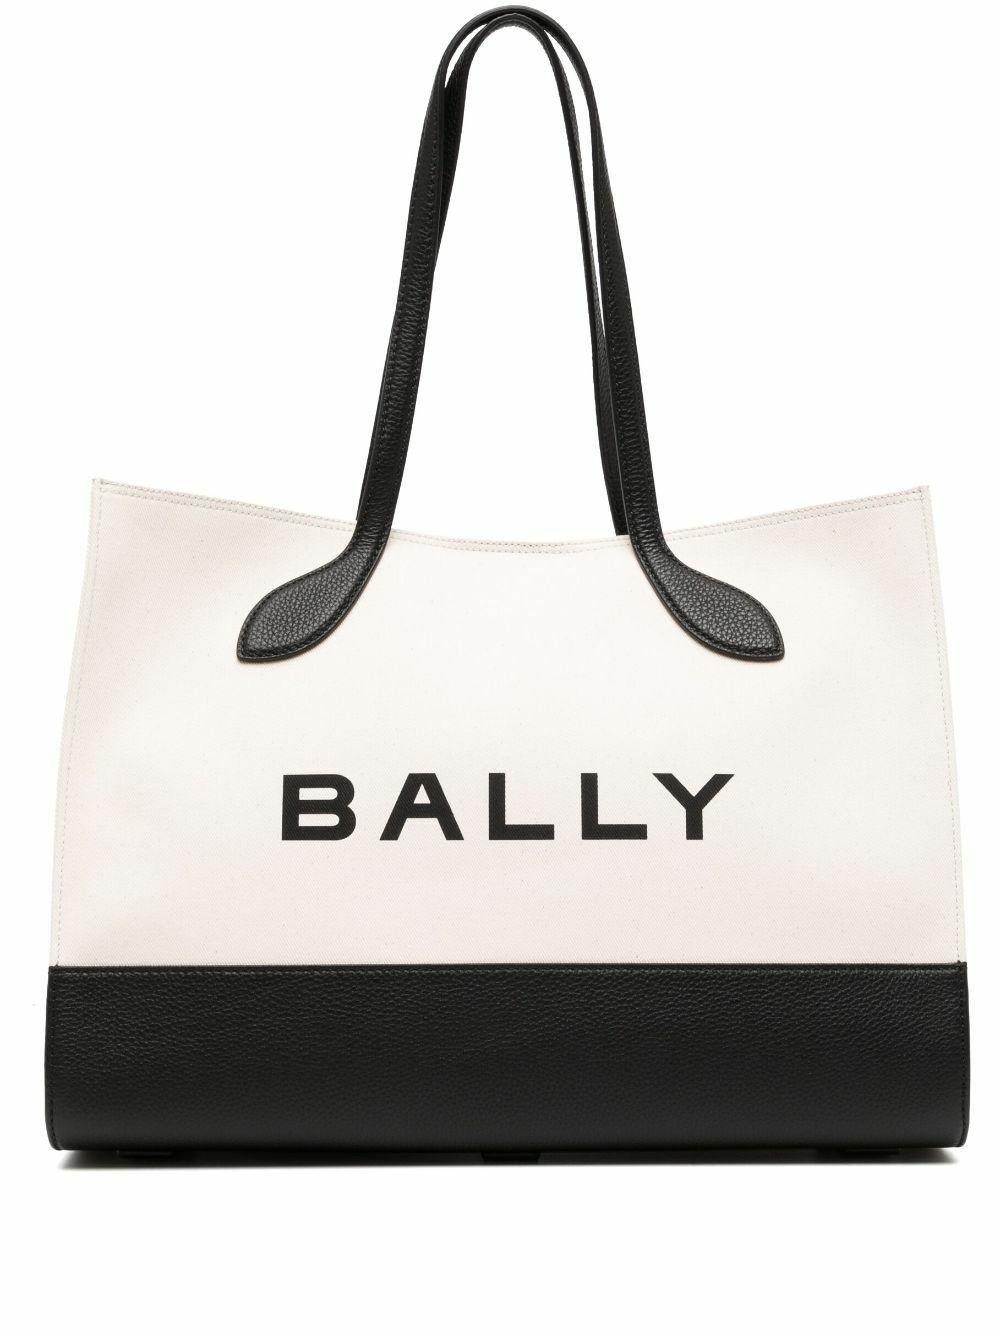 BALLY - Logo Tote Bag Bally